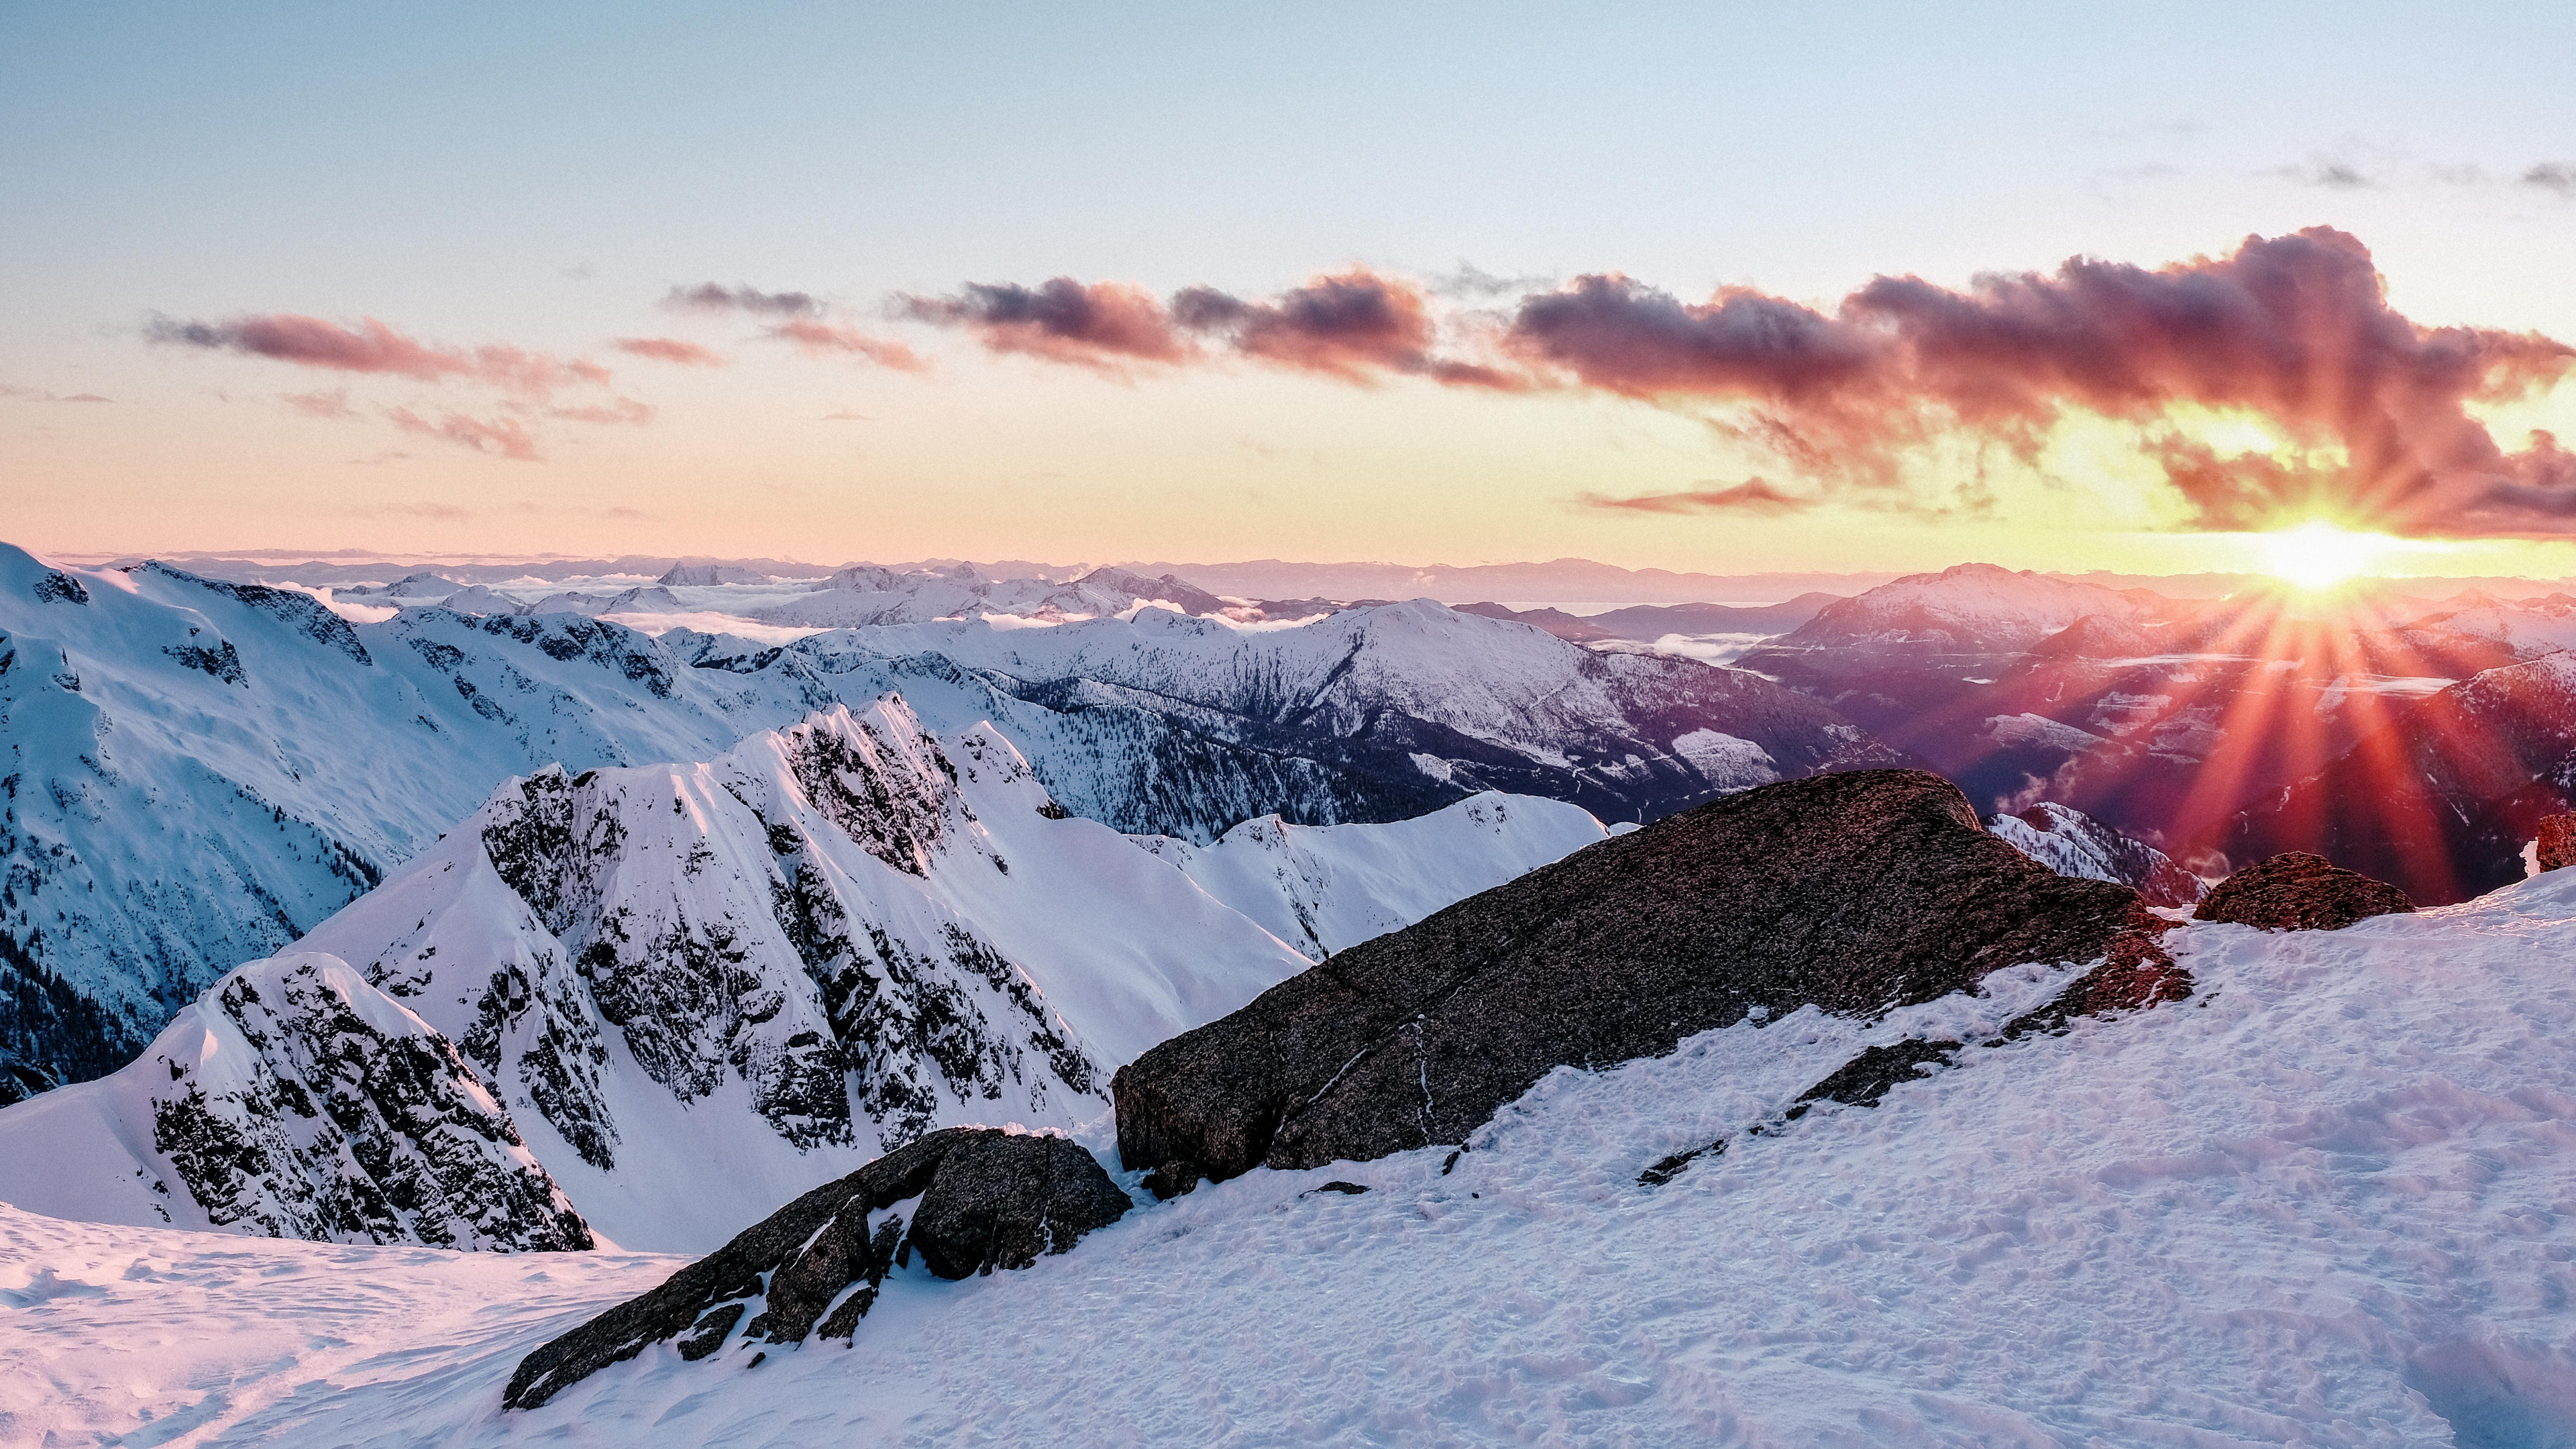 Bergigen Landschaftsformen, Schnee, Winter, Bergkette, Natur. Wallpaper in 3840x2160 Resolution